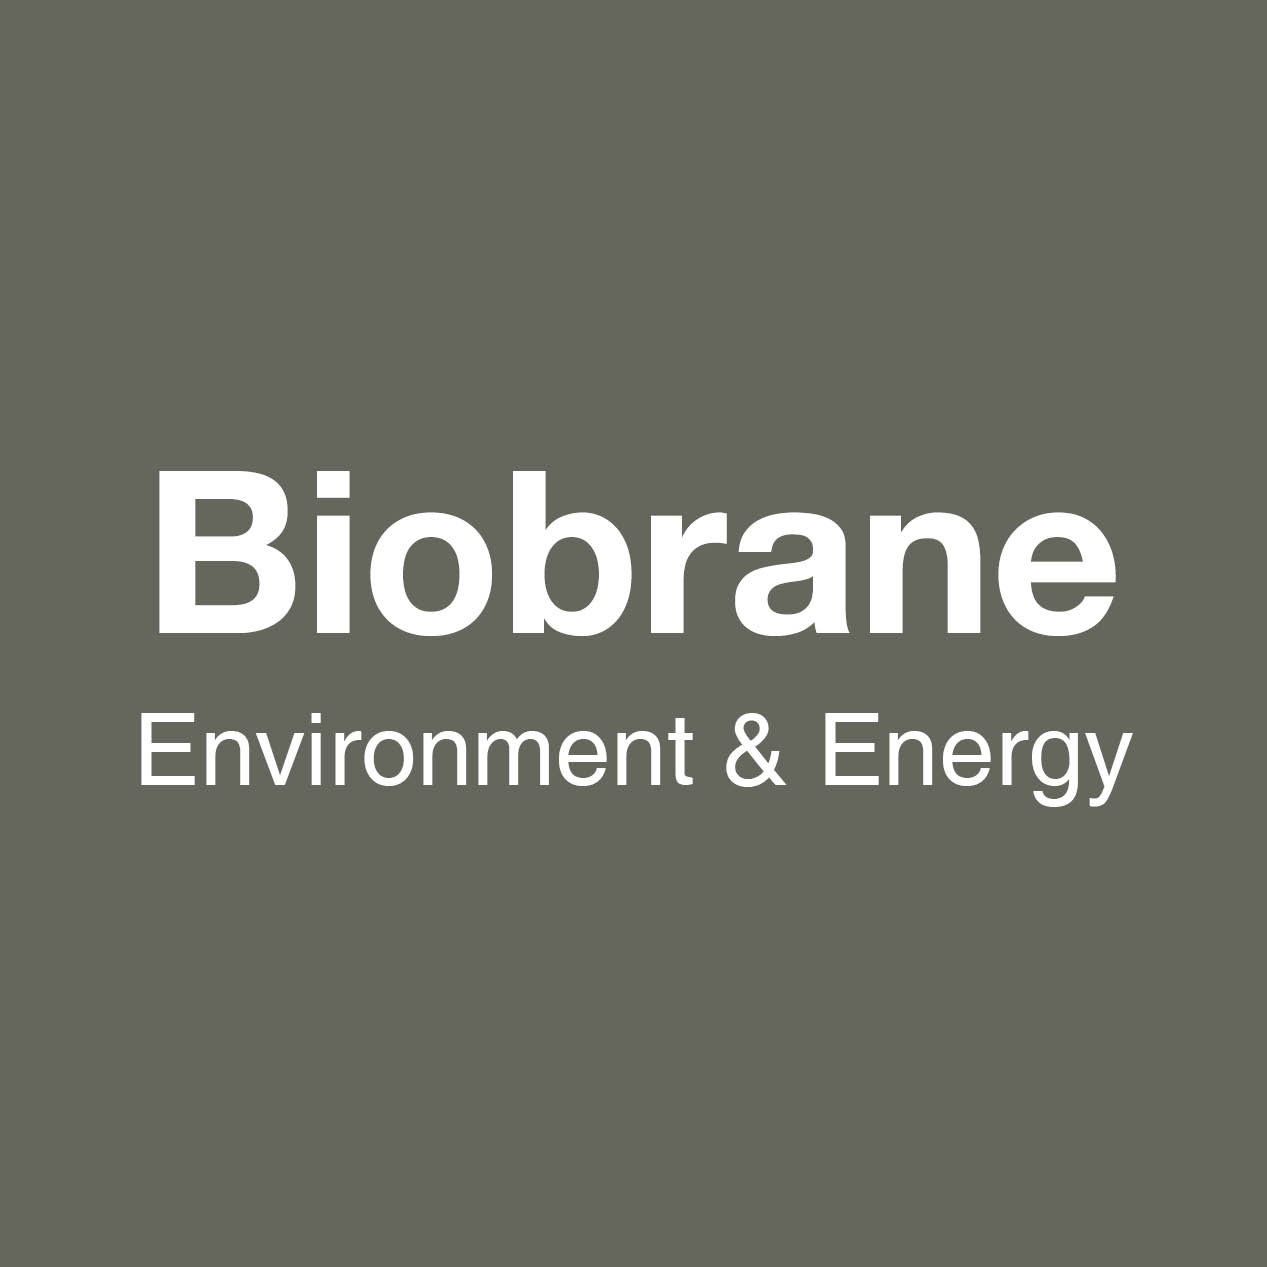 biobrane range